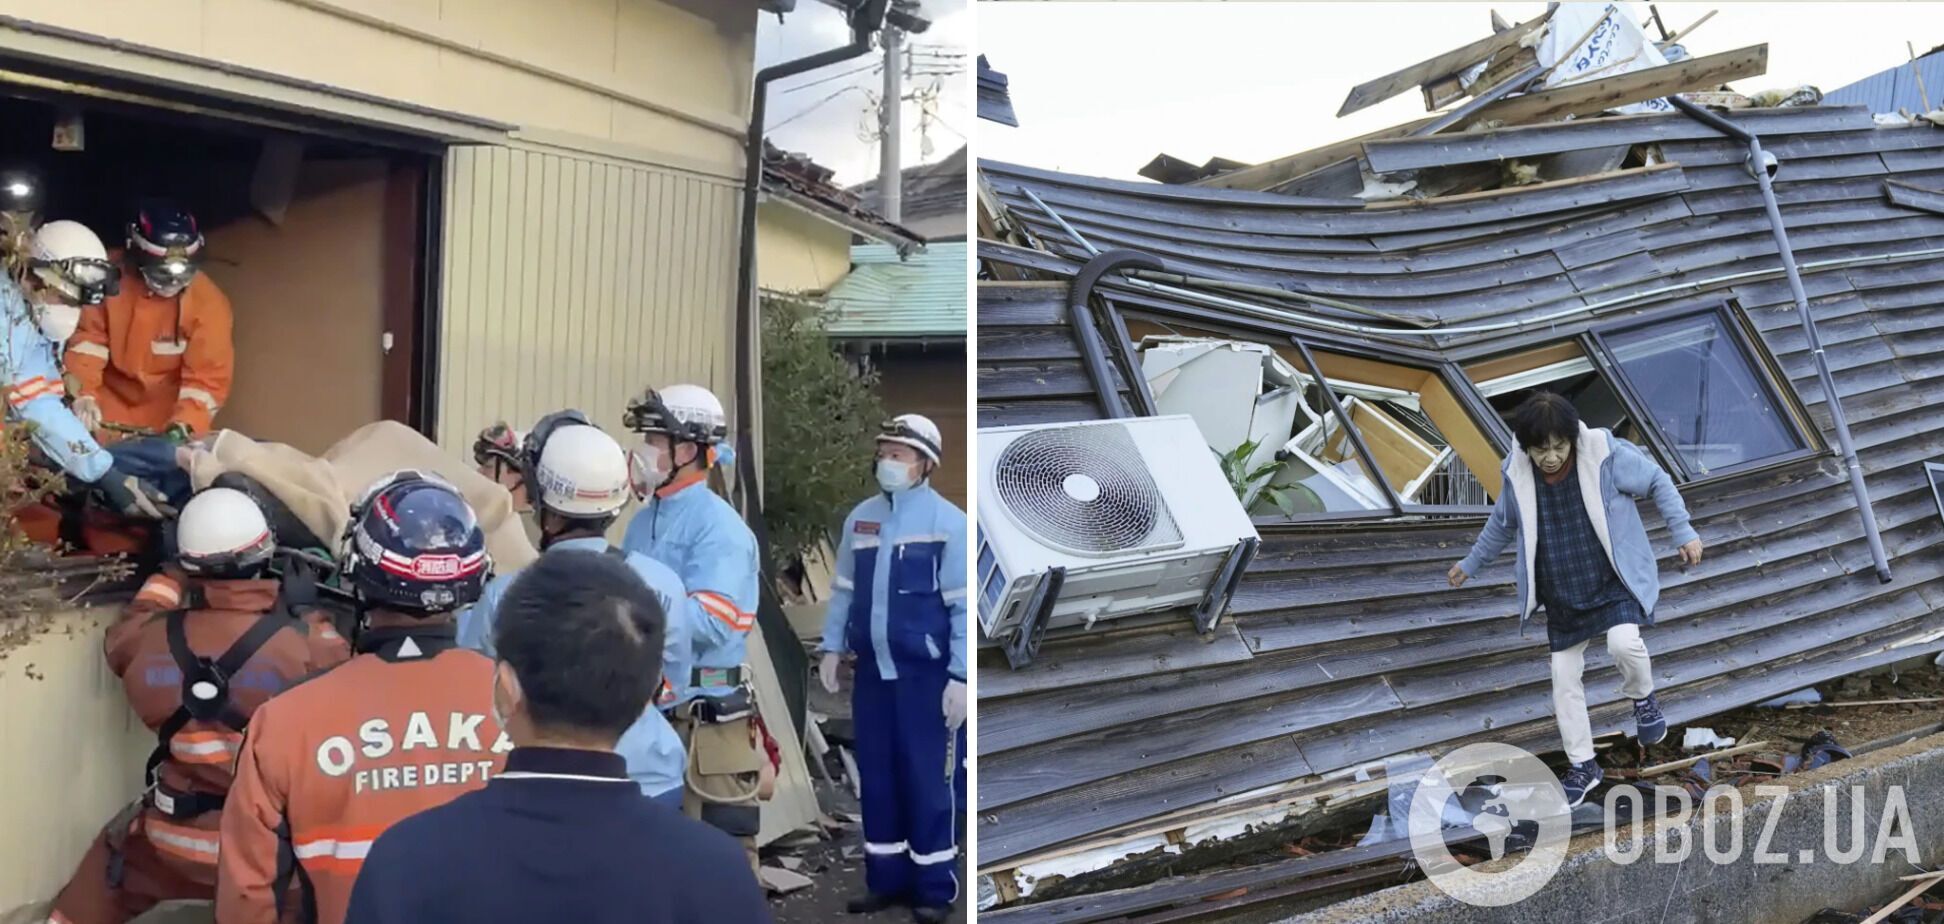 Число жертв землетрясения в Японии возросло до 168: поиски продолжаются девятый день. Фото разрушений